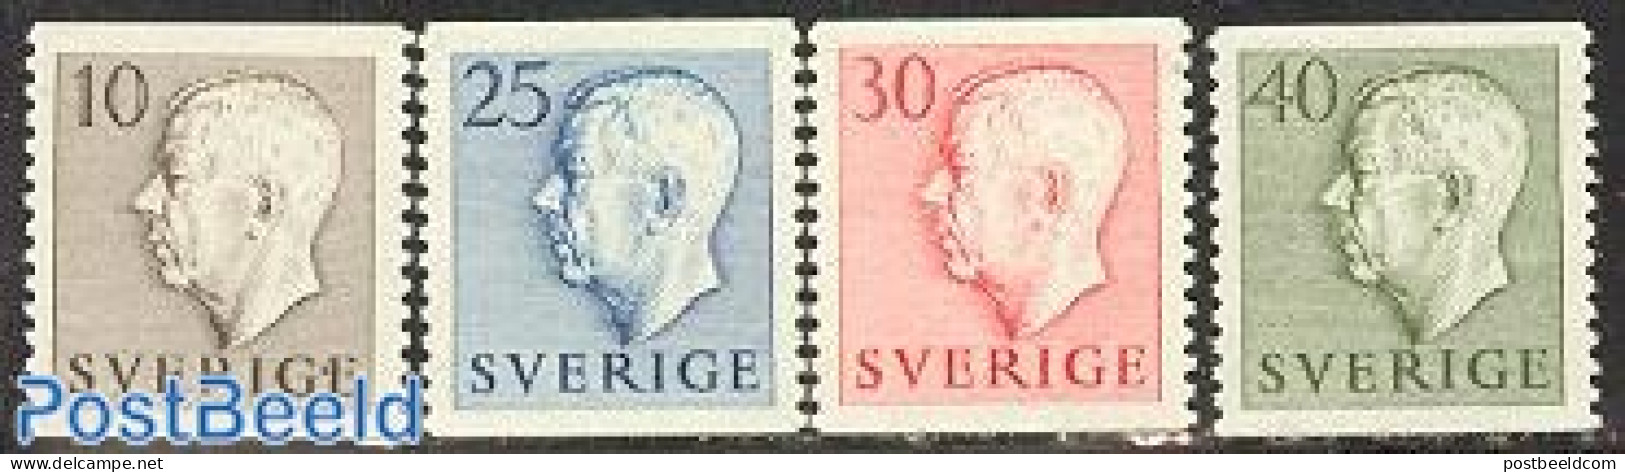 Sweden 1954 Definitives 4v, Mint NH - Unused Stamps